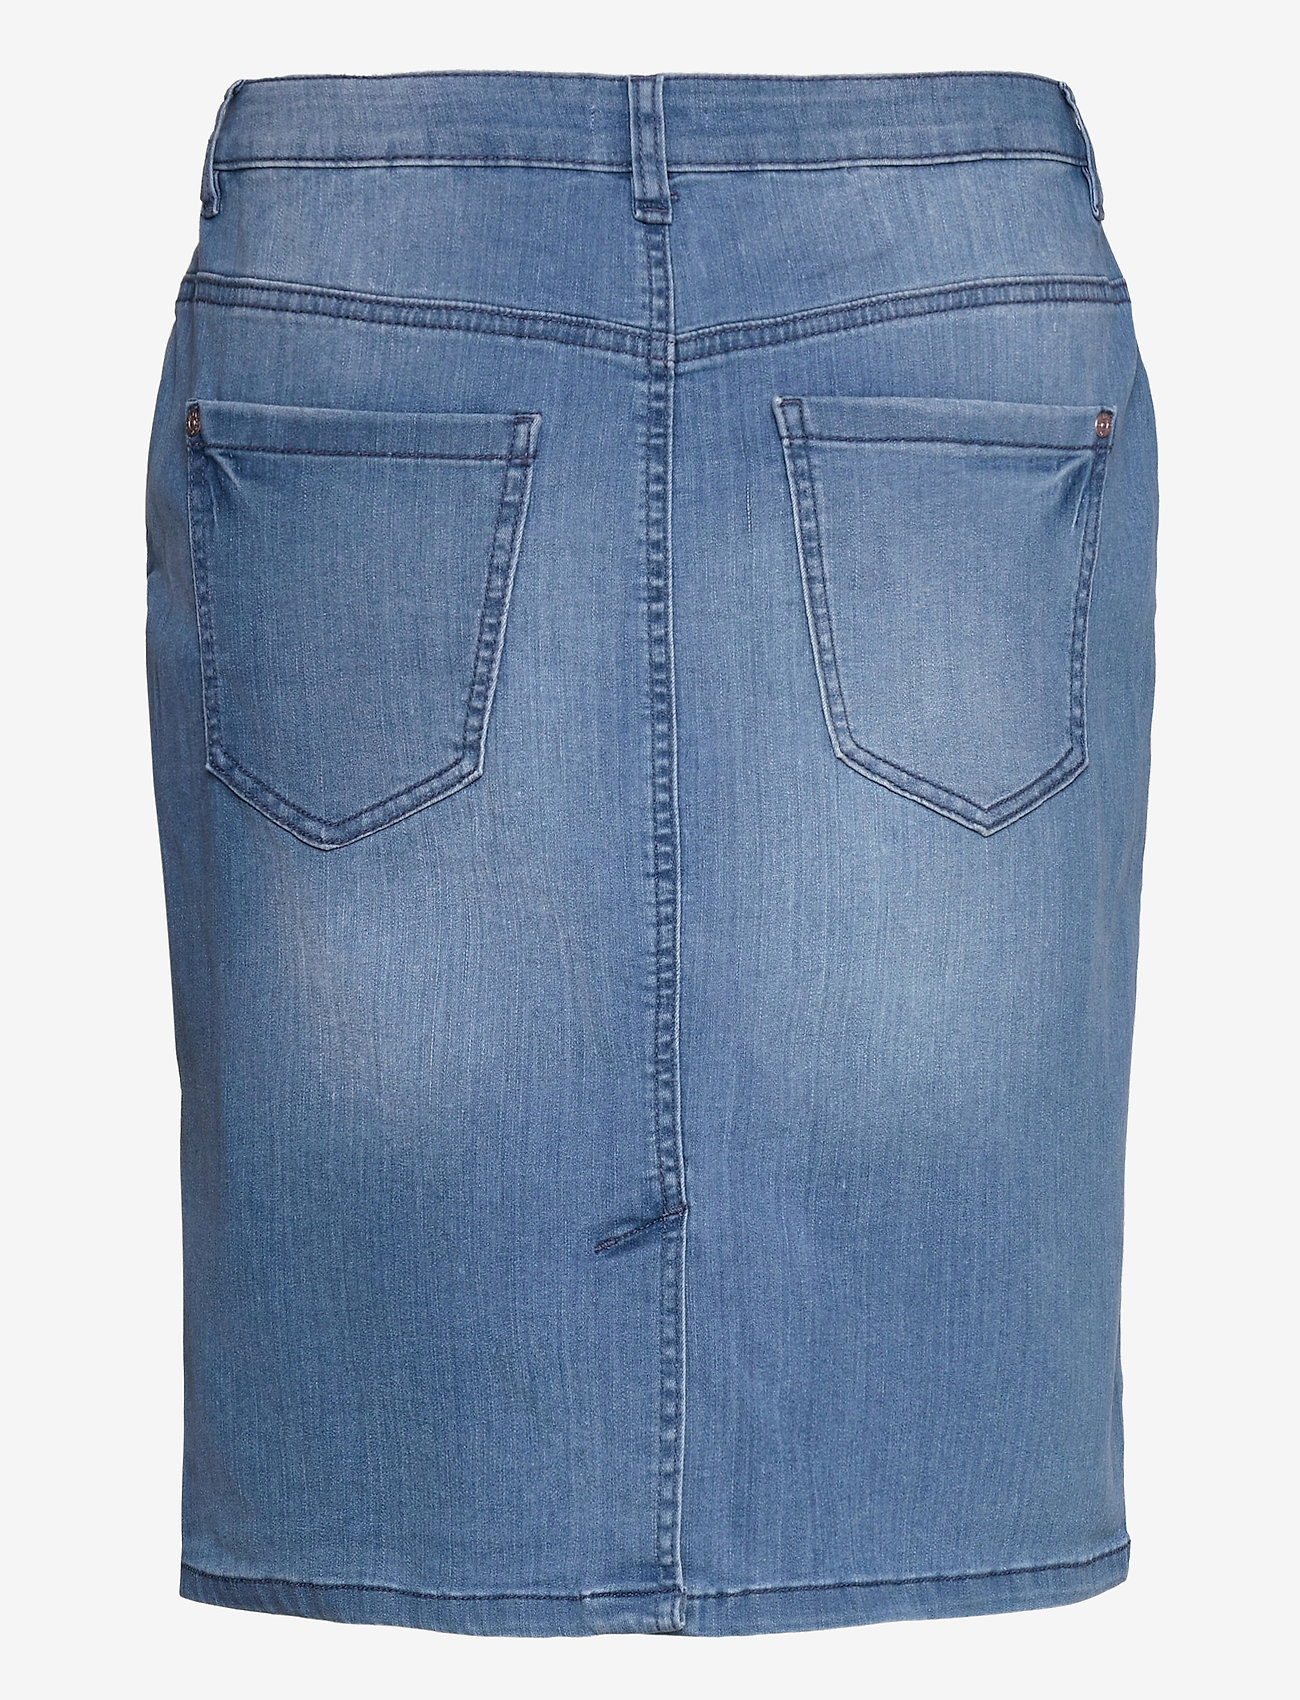 Tom Tailor - denim skirt - jeanskjolar - light stone wash denim - 1